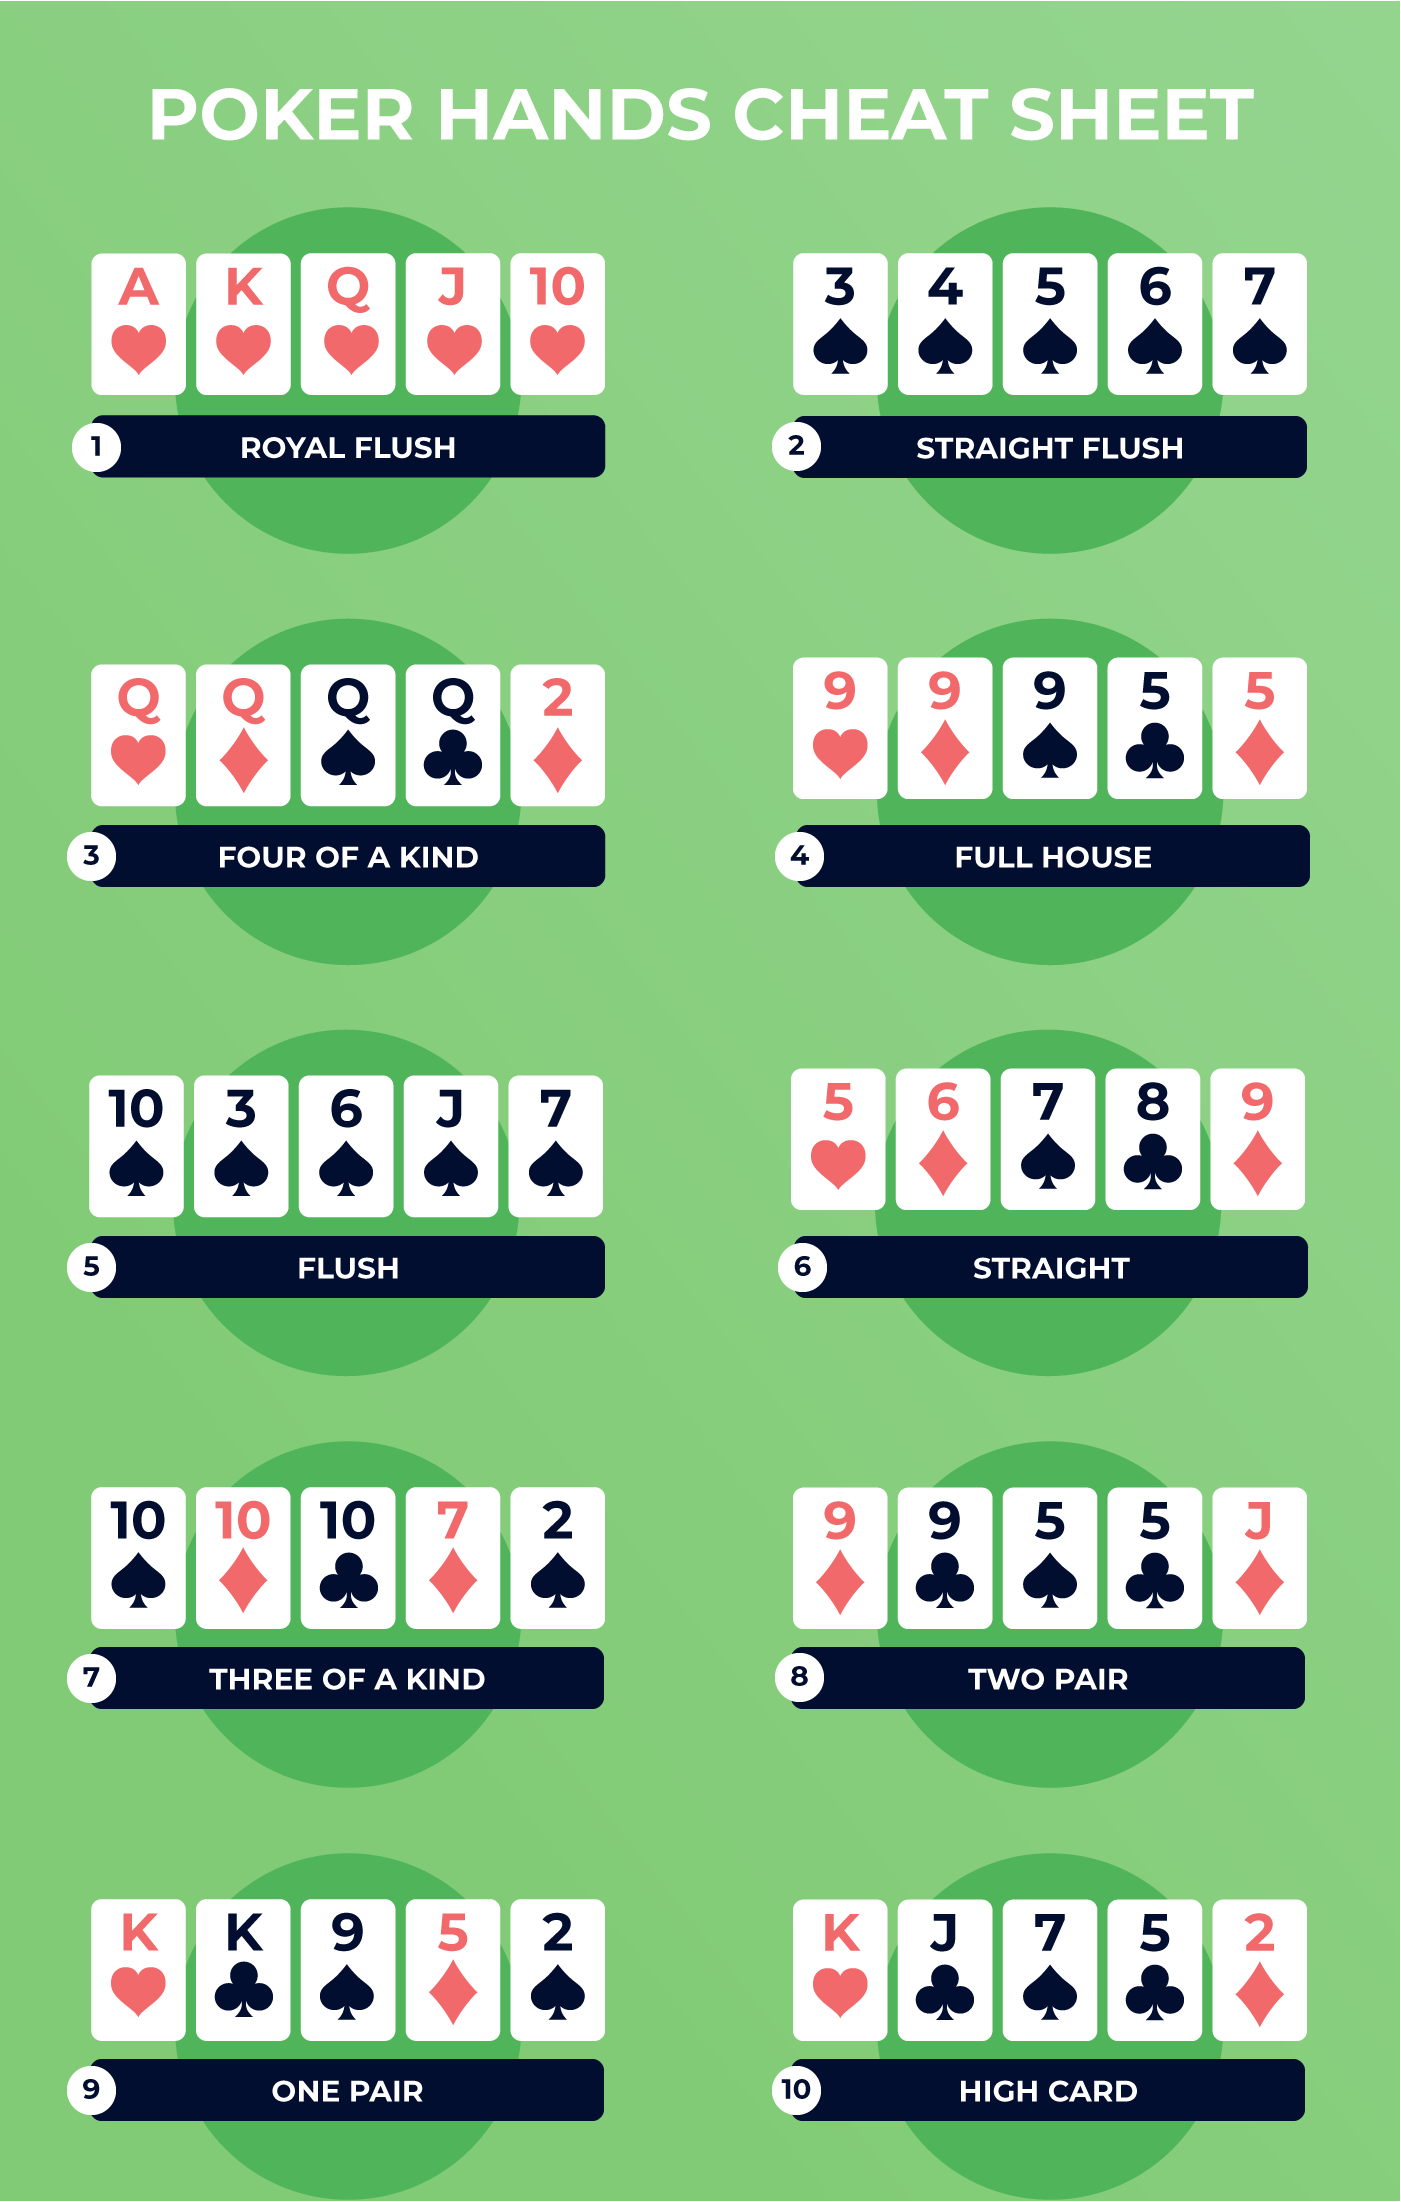 Poker hands cheat sheet